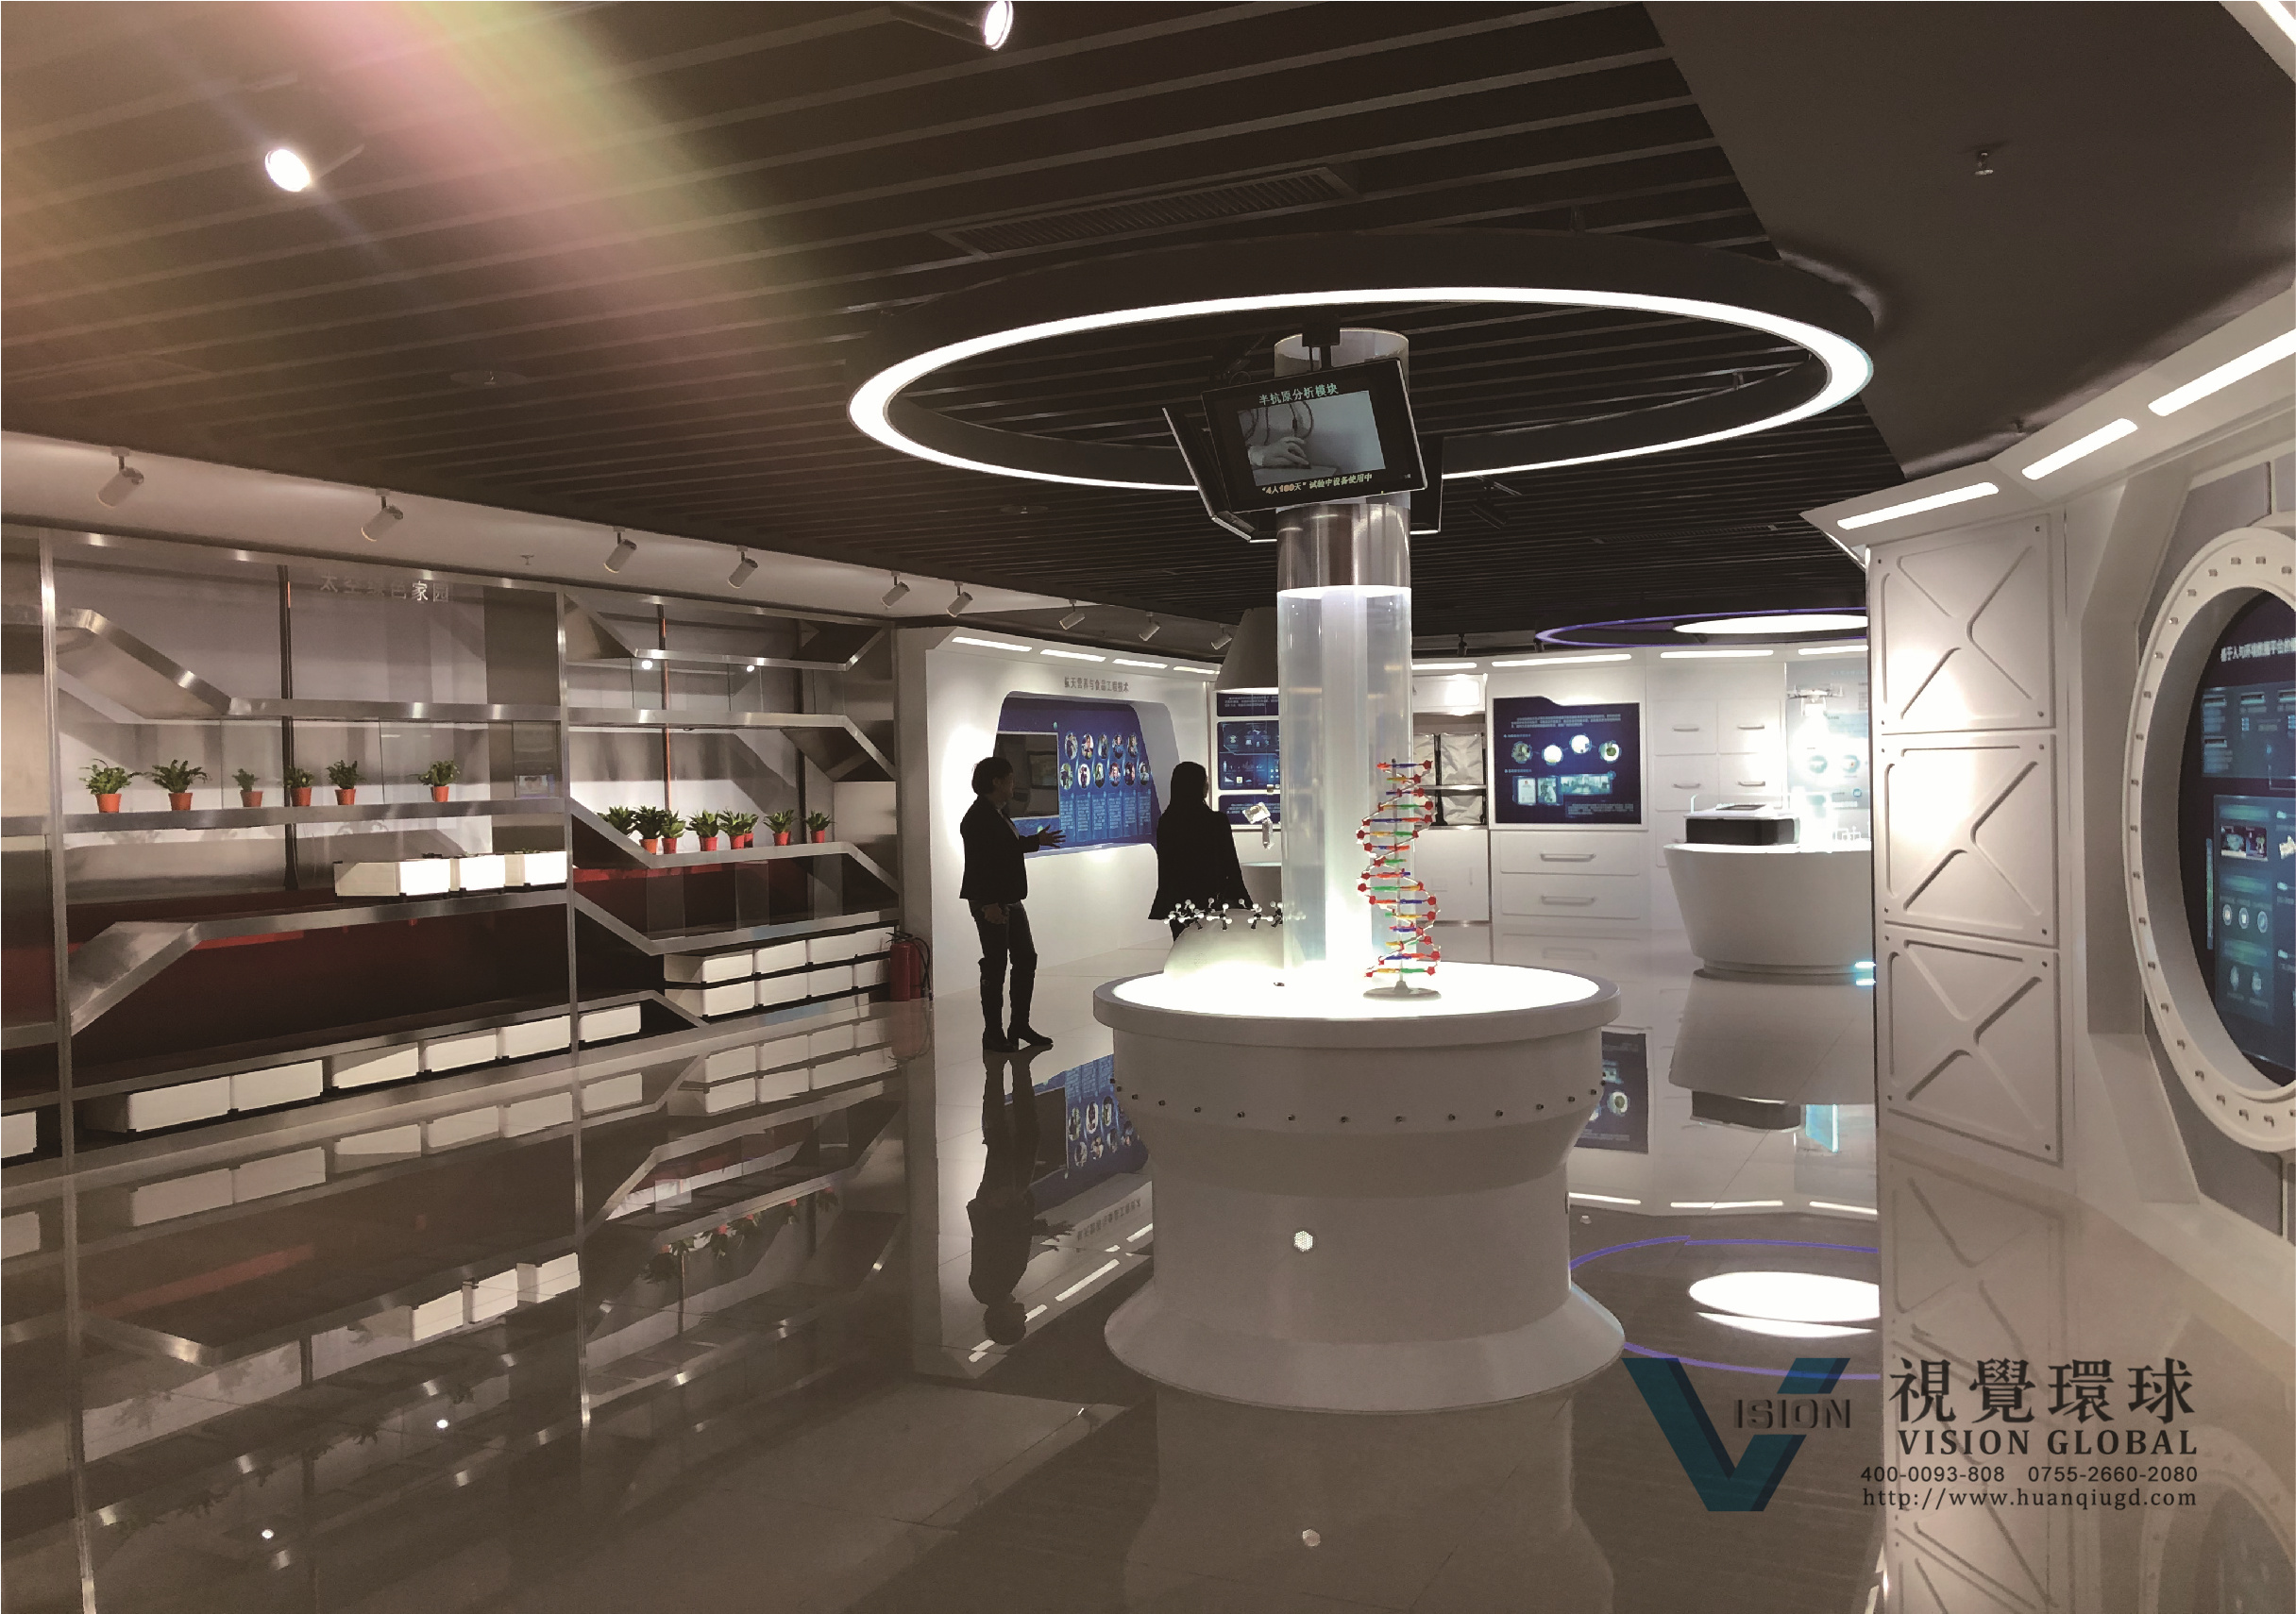 广东深圳视觉环球为馆方提供全方位的展厅运维服务